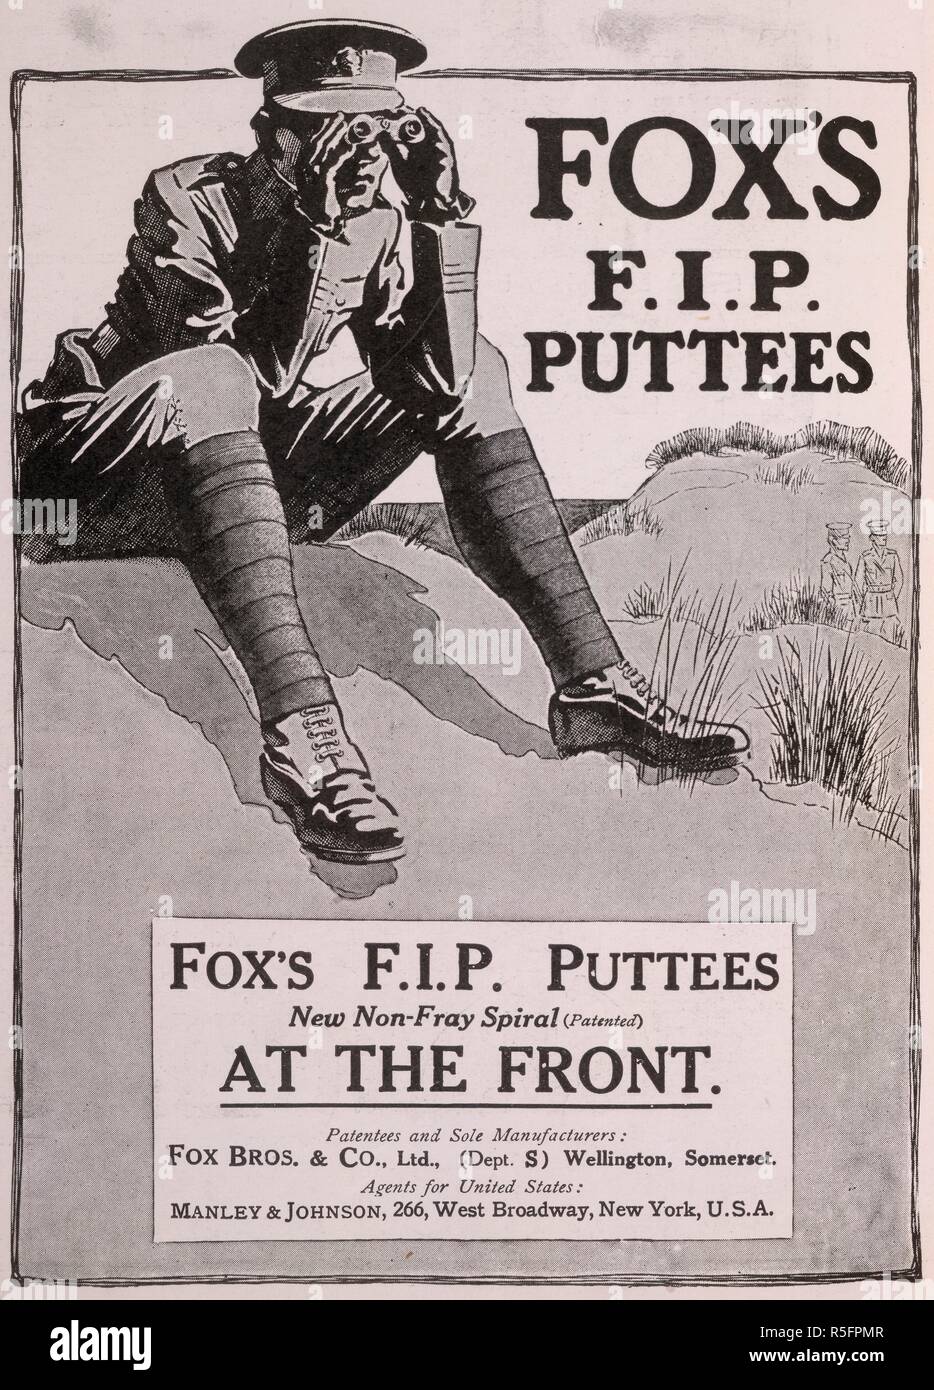 "Fox's F.I.P puttees'. Une publicité pour des chaussures pendant la Première Guerre mondiale. Sphere : un journal illustré pour la maison. 1915. Source : la sphère, 17 juillet 1915, page 52. Banque D'Images